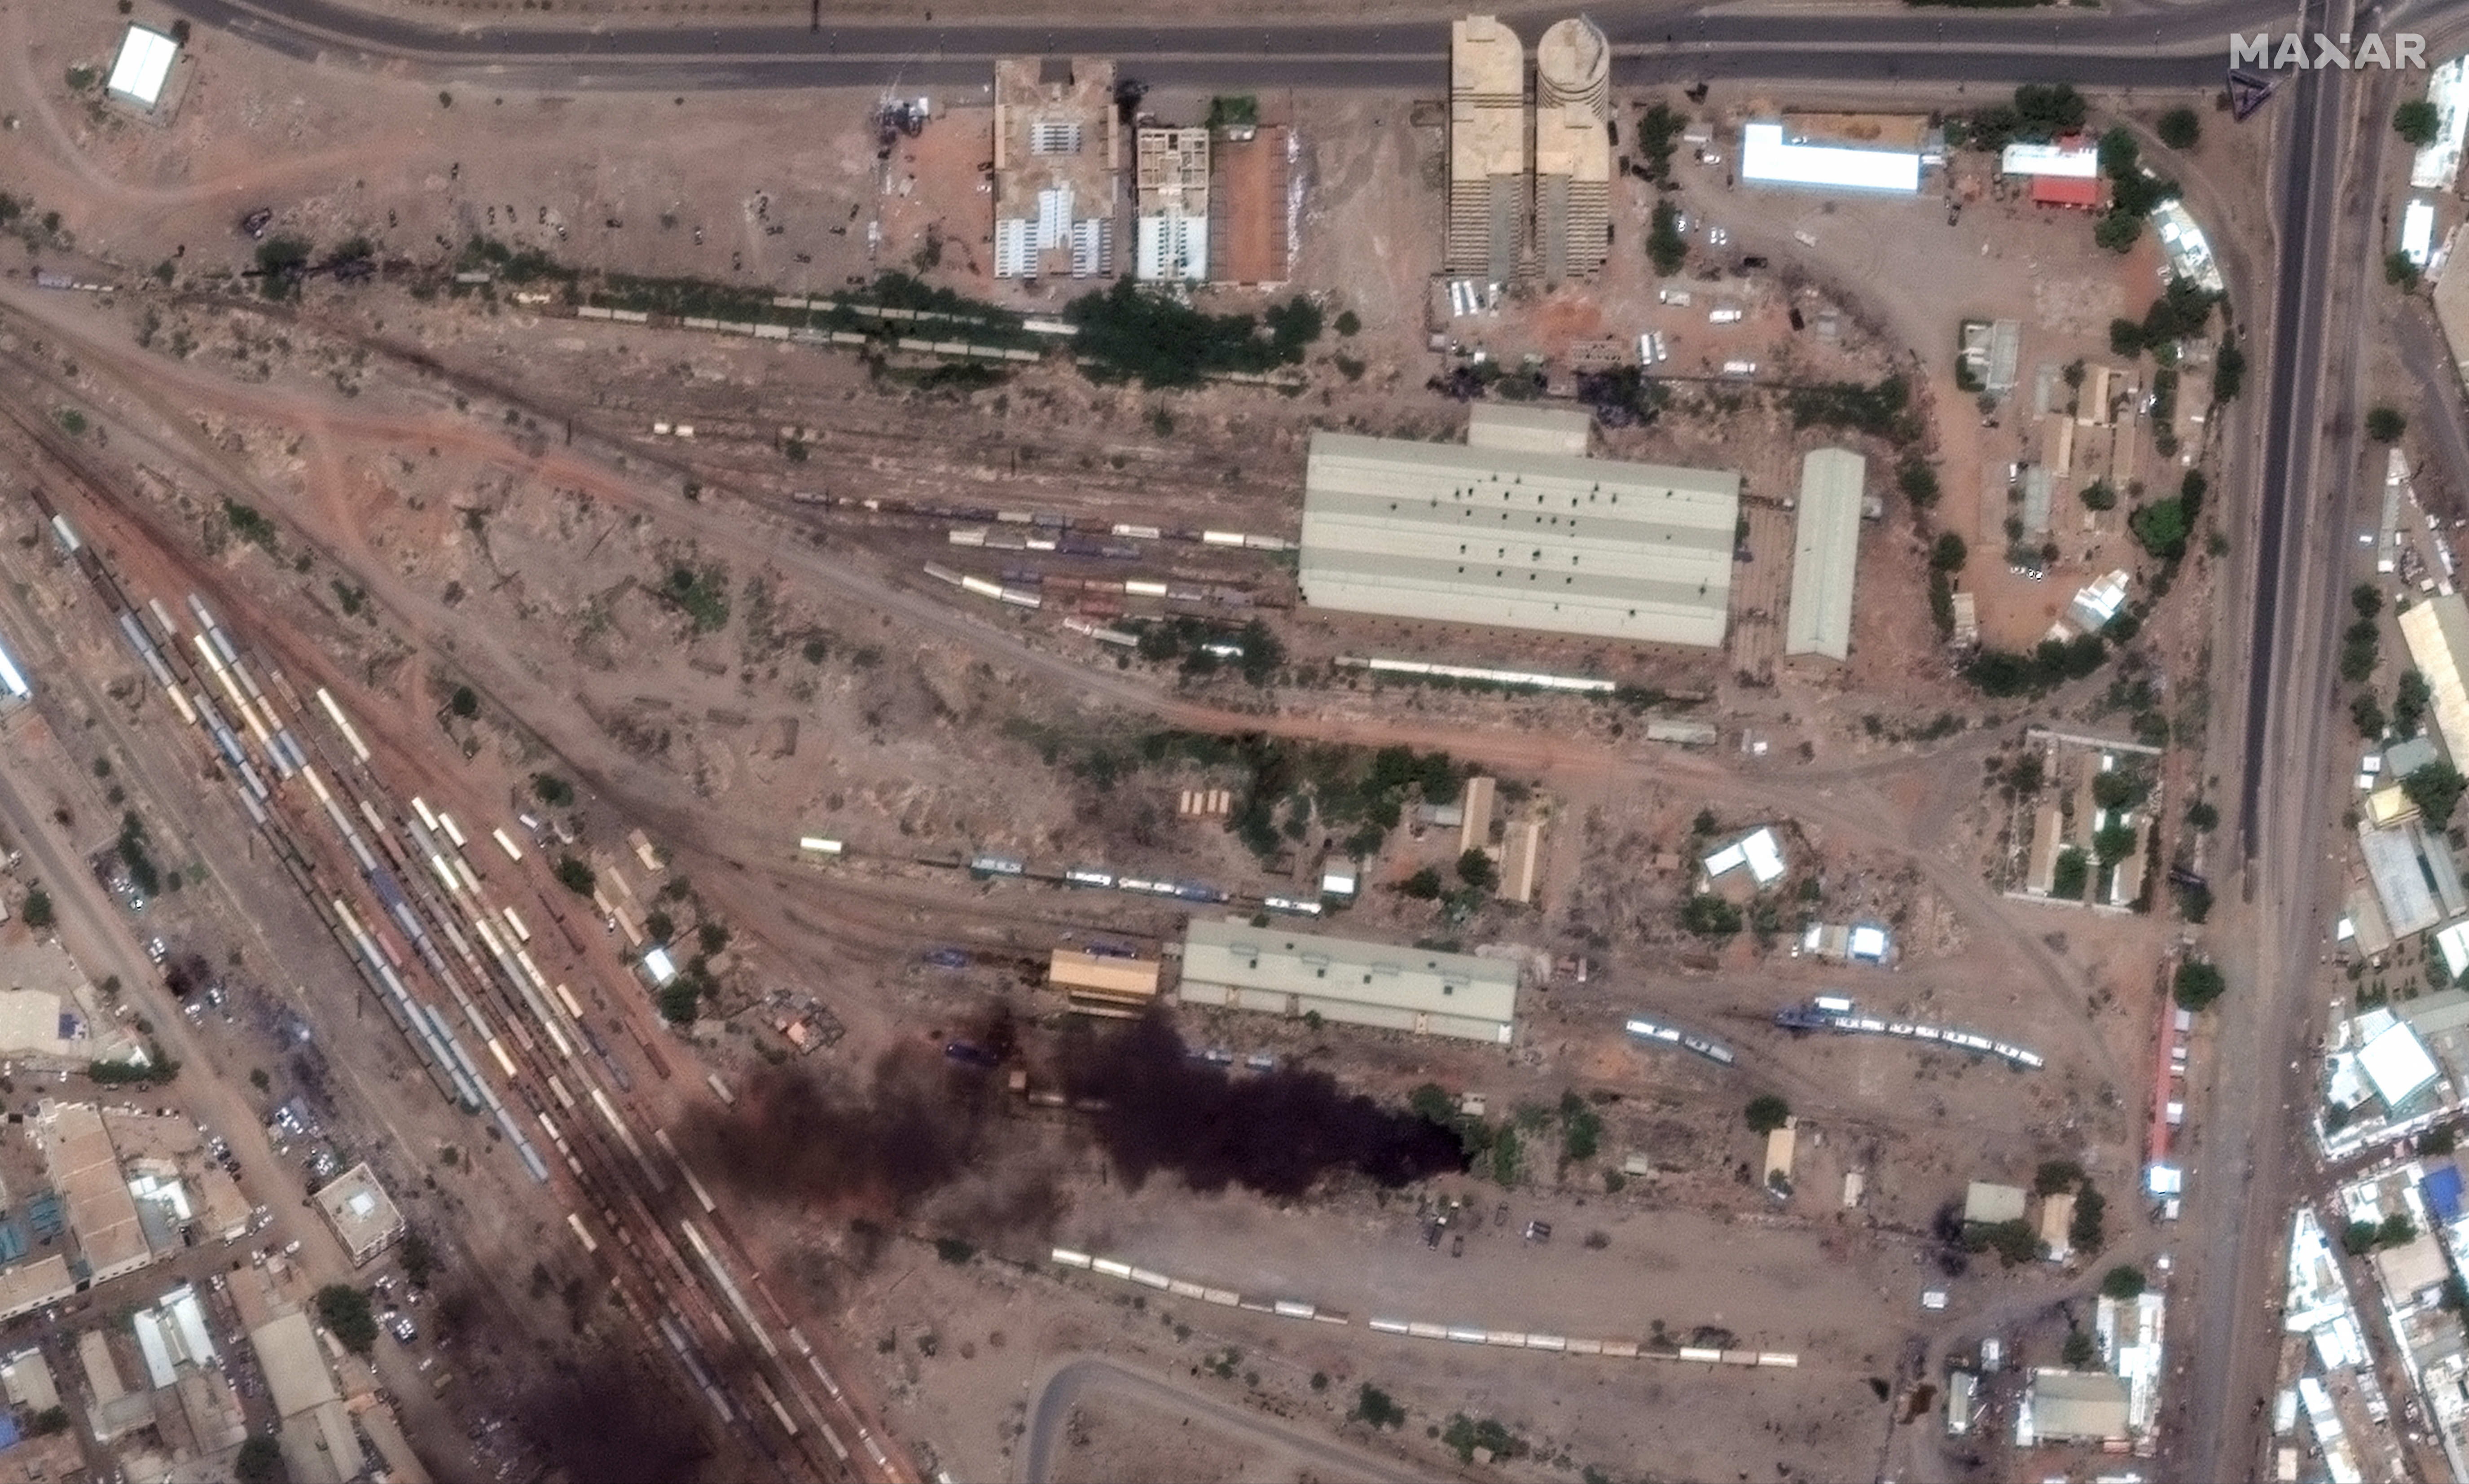 Satellite image shows fires and smoke at Khartoum Railway authority in Khartoum